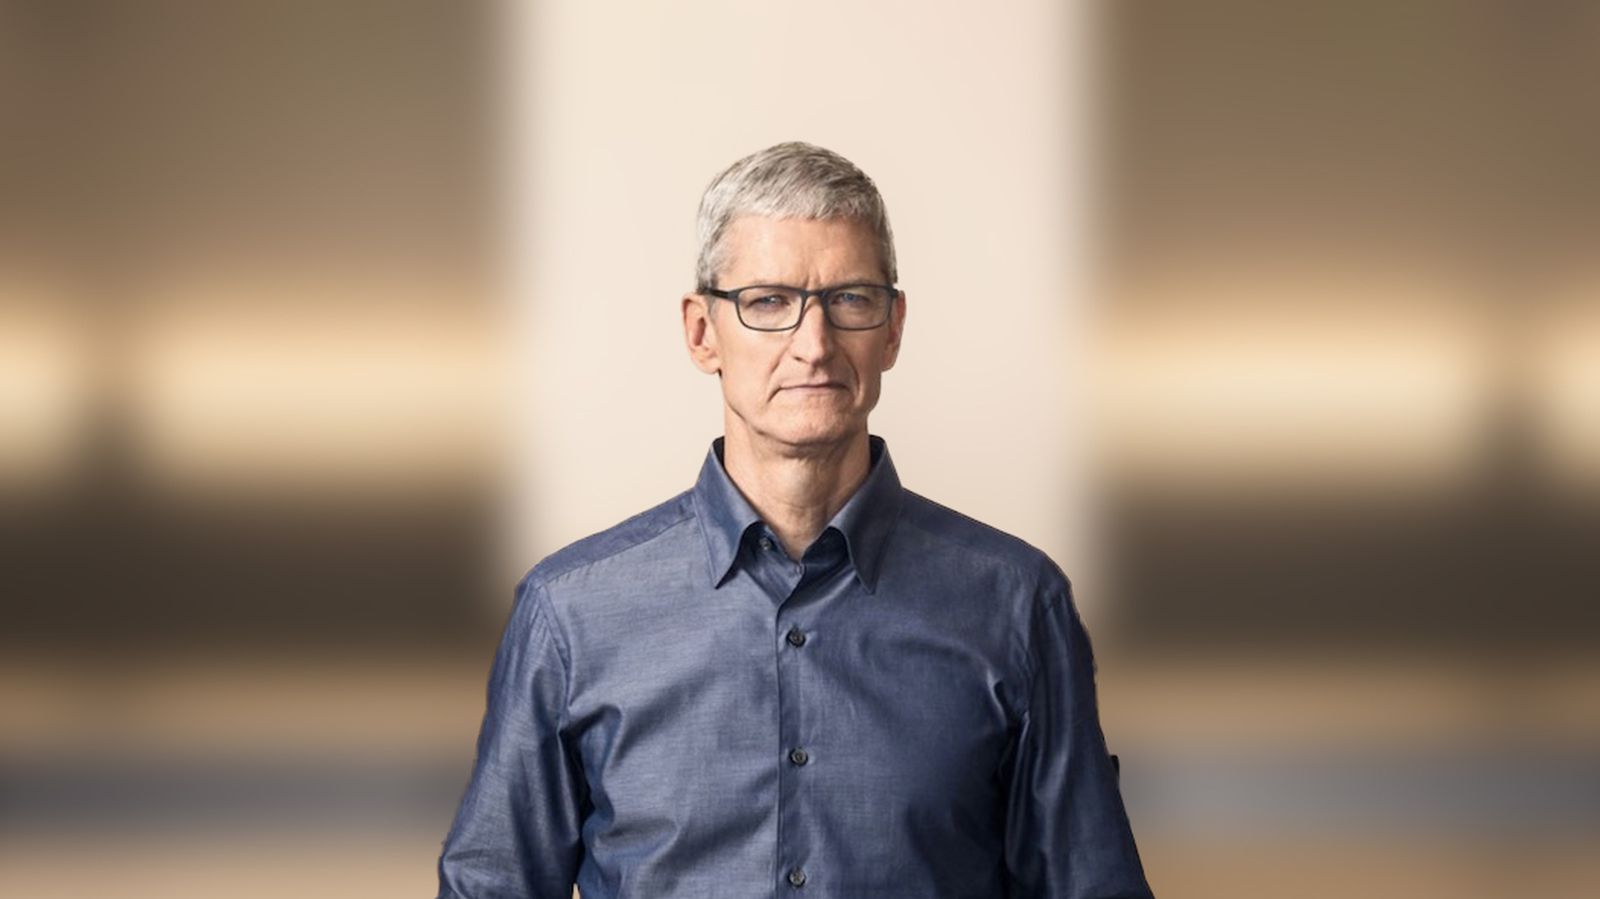 O CEO da Apple, Tim Cook, fala sobre headset AR/VR e muito mais em uma nova entrevista